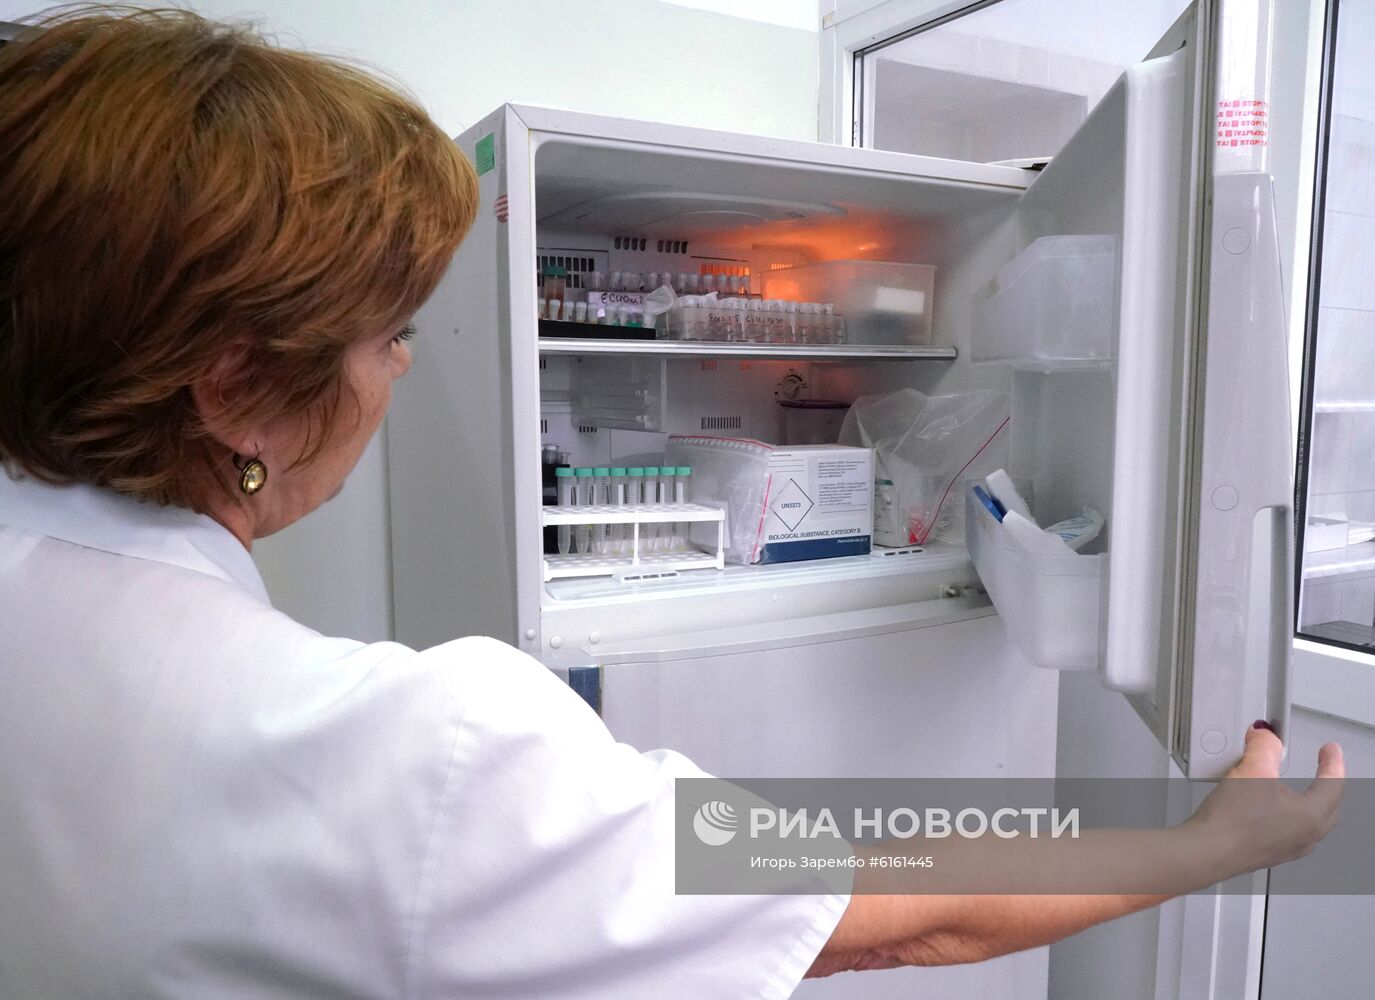 Центр гигиены и эпидемиологии в Калининградской области 